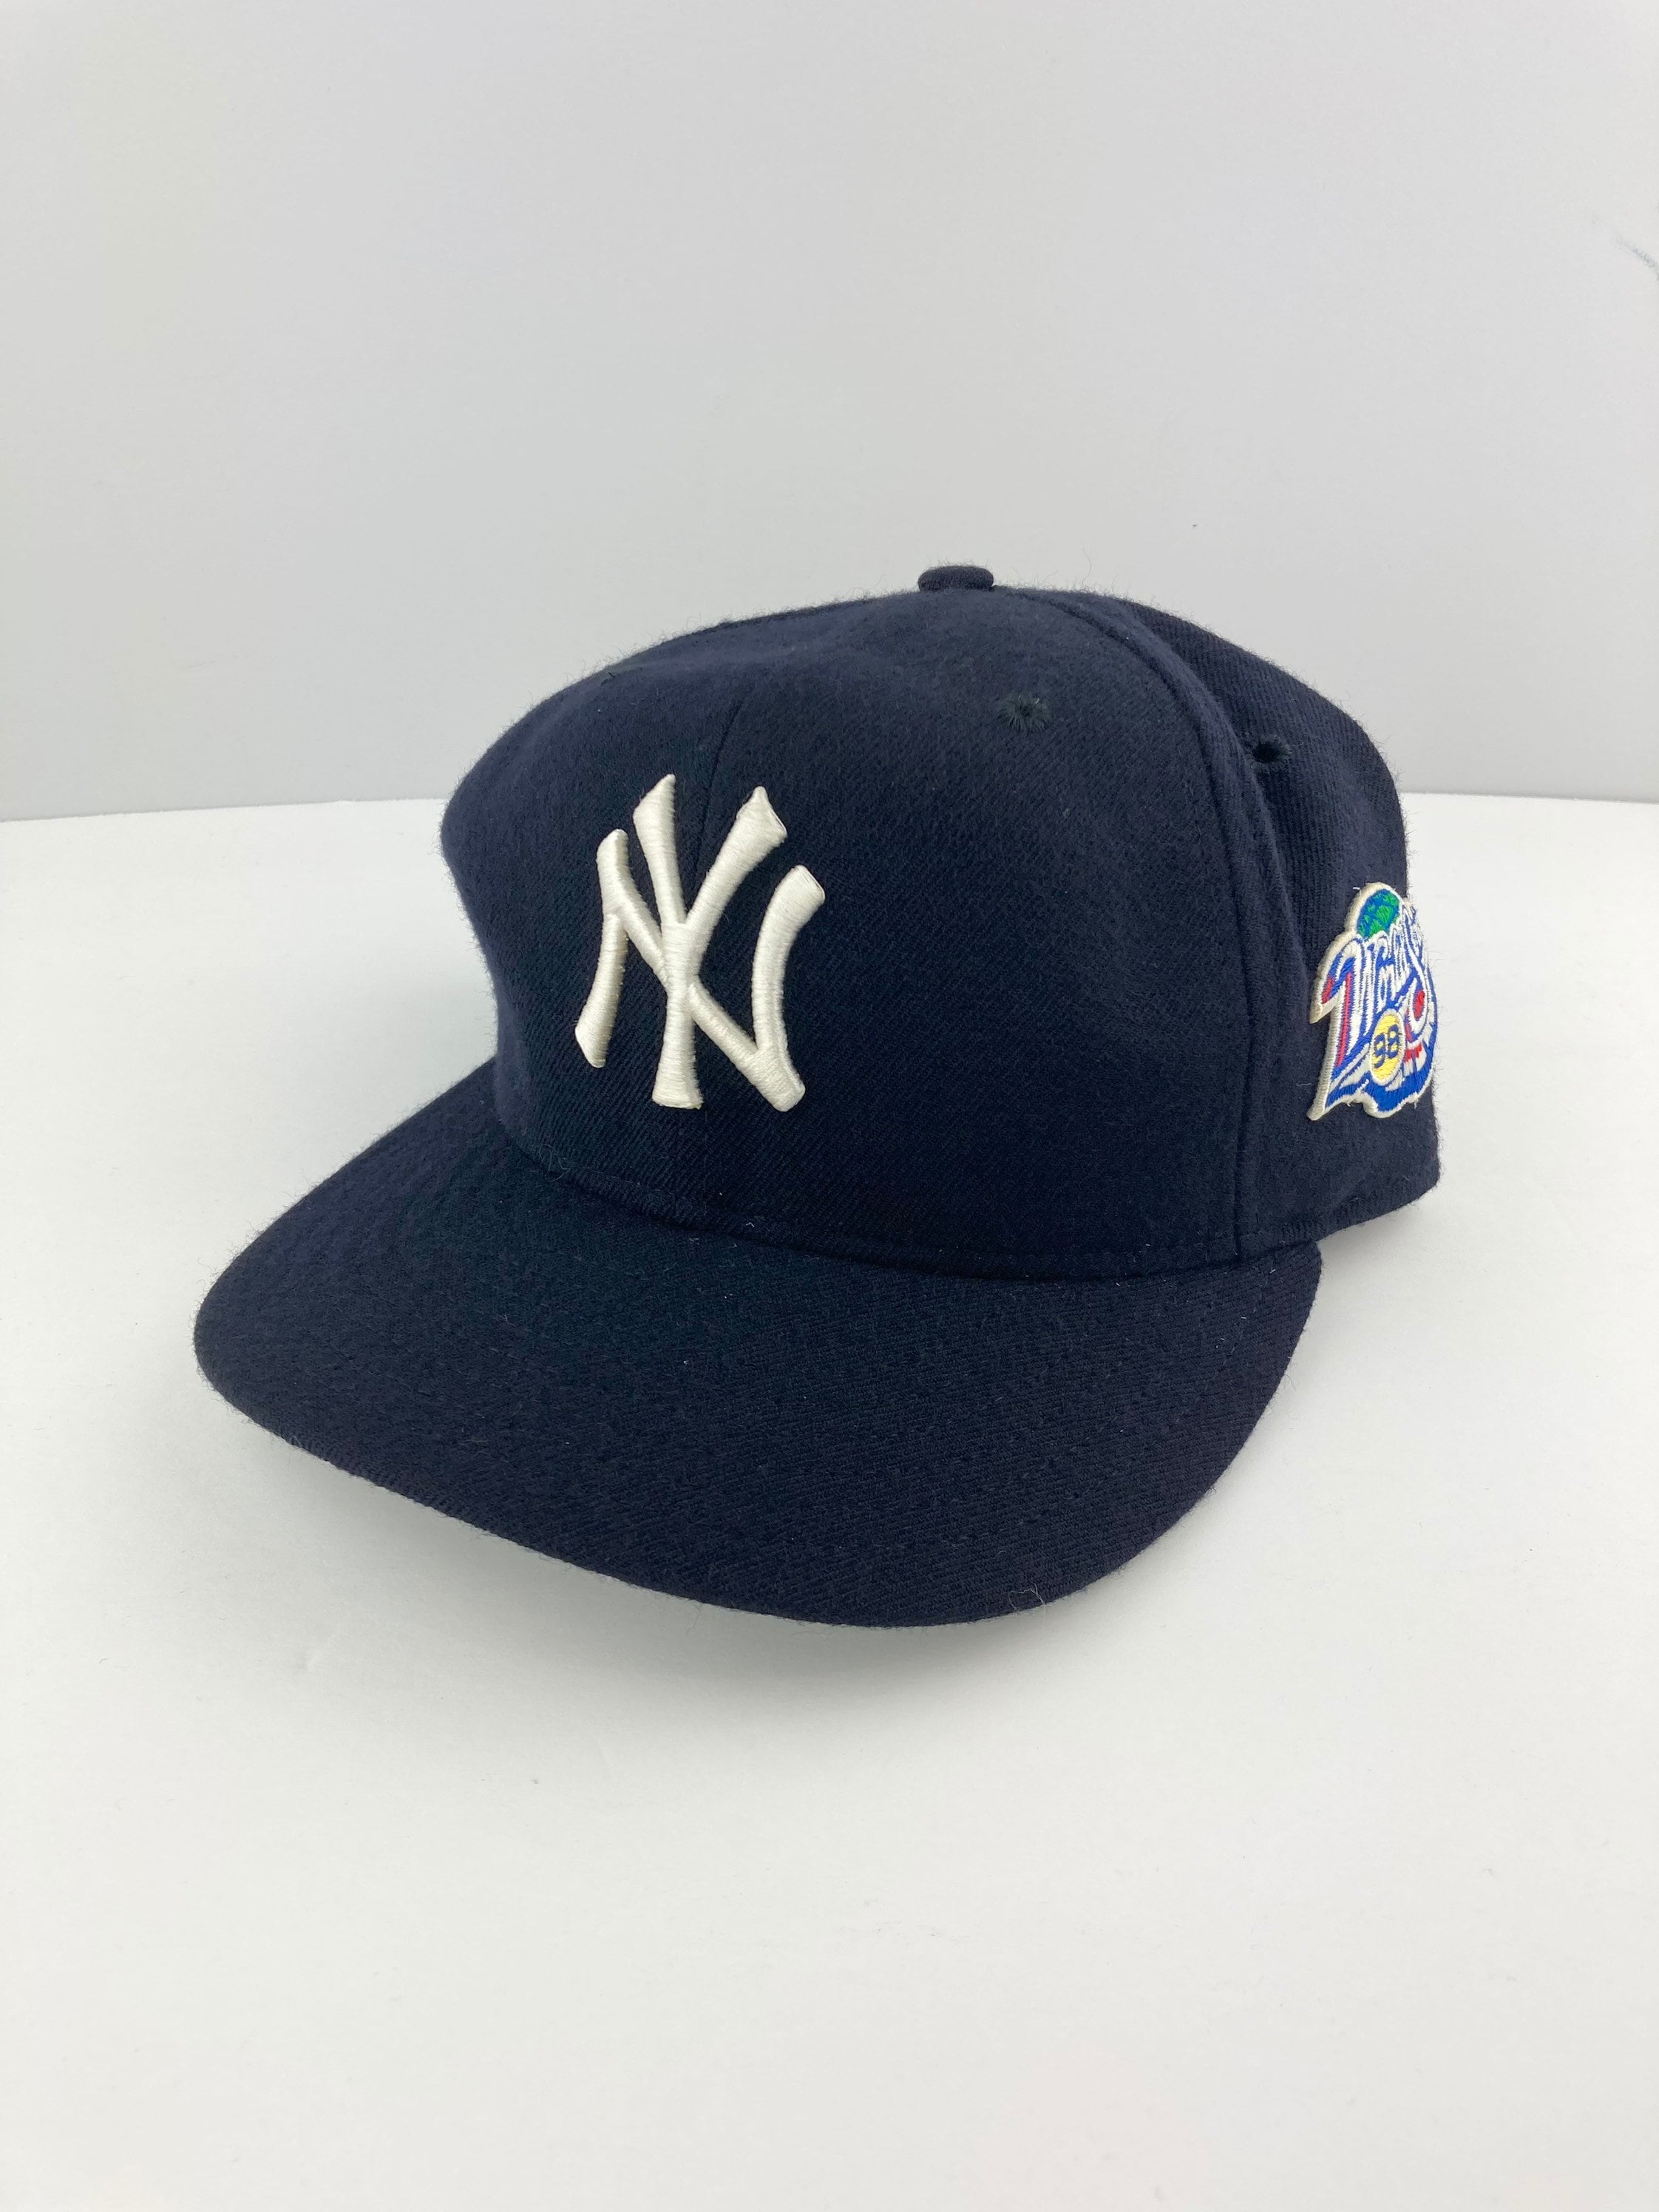 Vintage Yankees Cap - Etsy